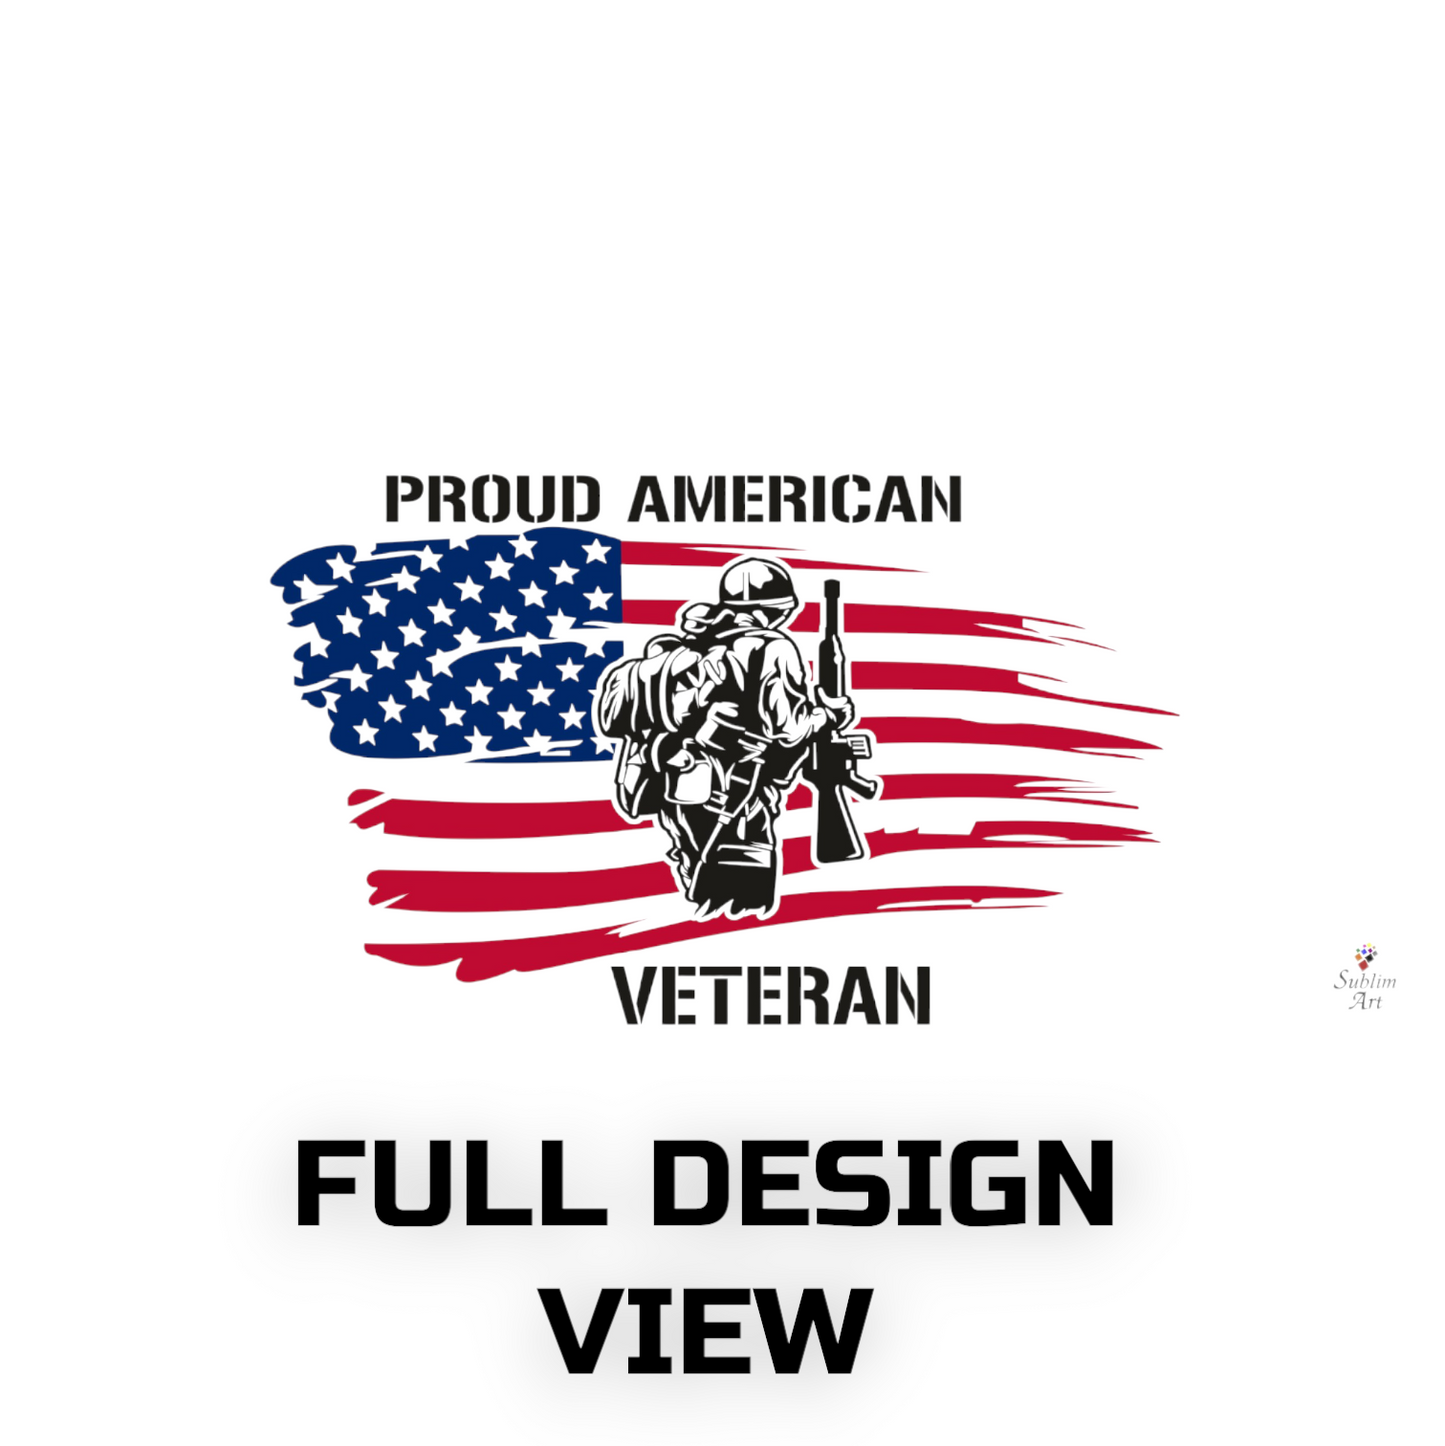 SUBLIMART: Veteran - Mug 'Proud Brother of Veteran' (Design #16B)